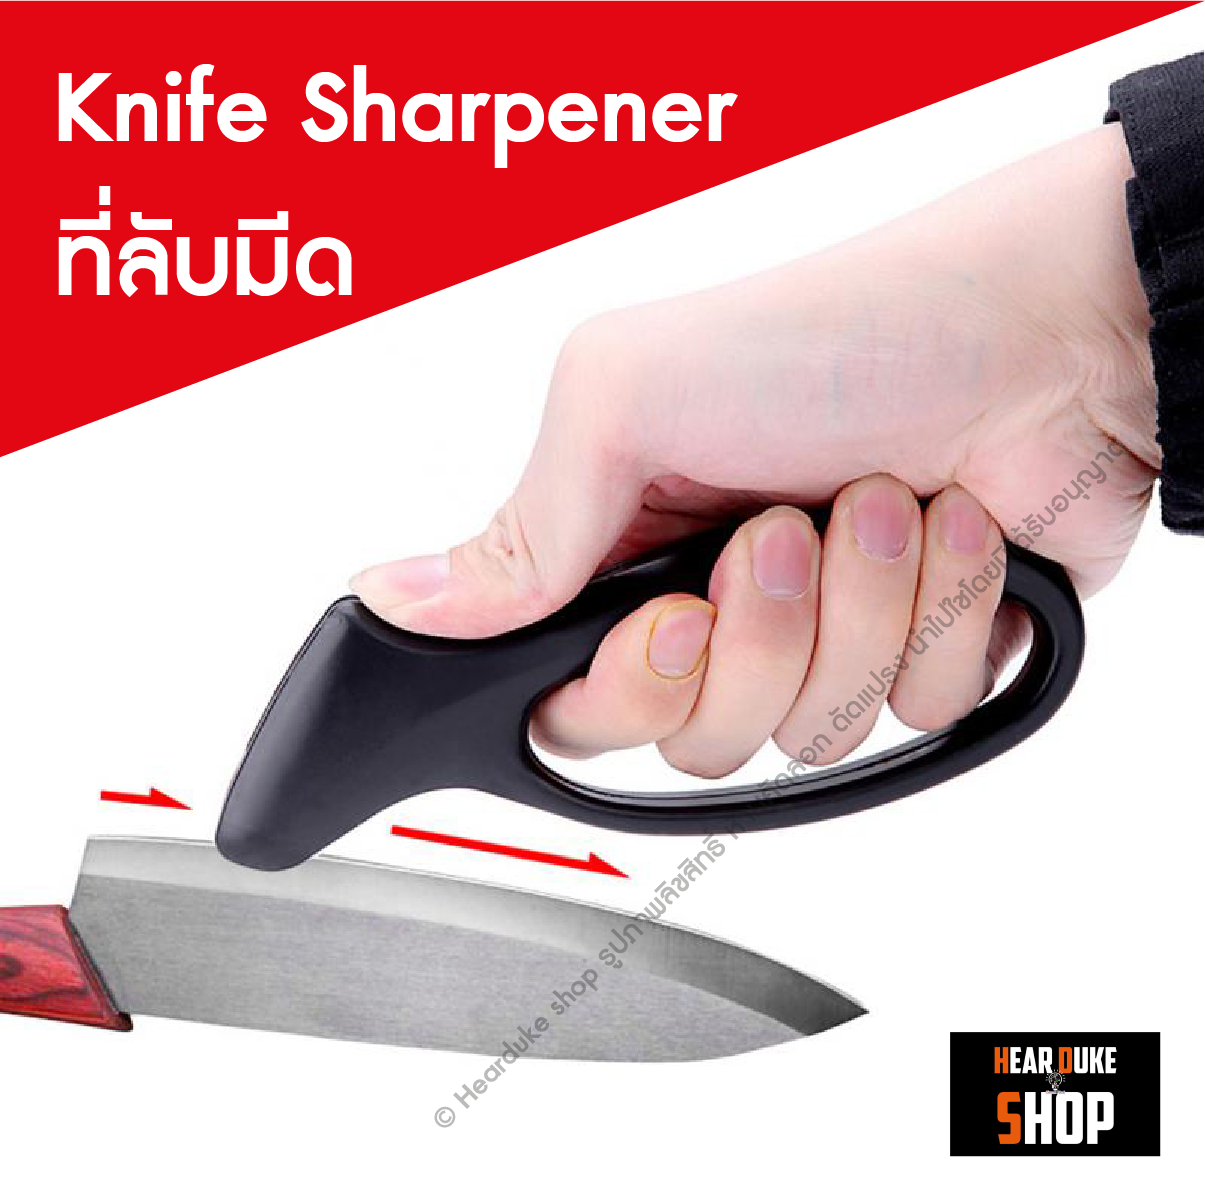 ทีลับมีด ลับคม อุปกรณ์ลับมีด กรรไกร Knife Sharpener